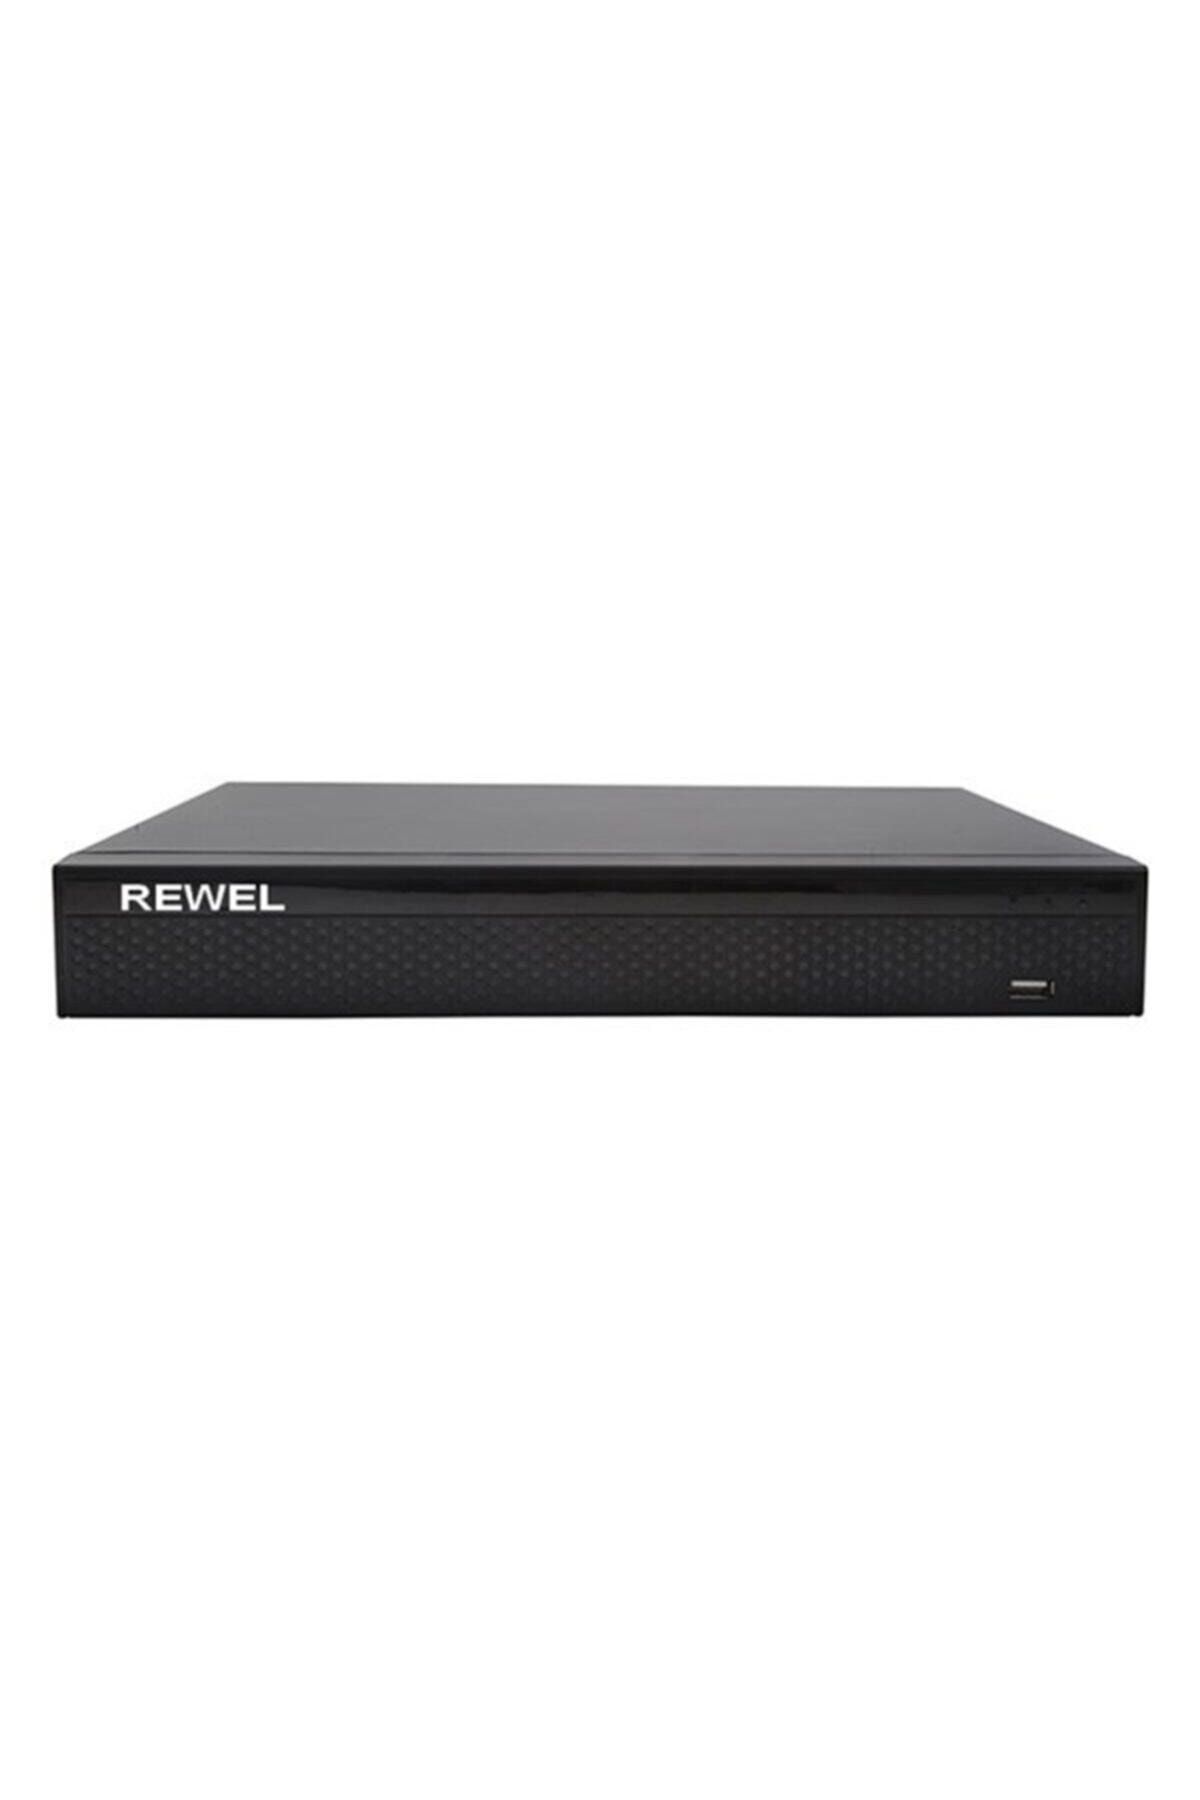 REWEL Xvr-210hd 16 Kanal Dvr Kayıt Cihazı 232008